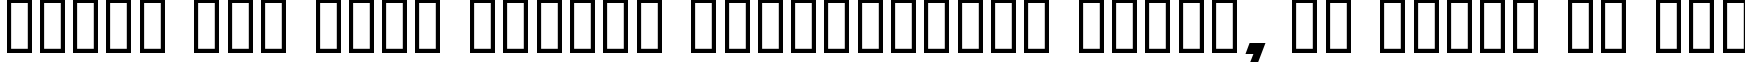 Пример написания шрифтом Soviet X-Expanded Italic текста на русском